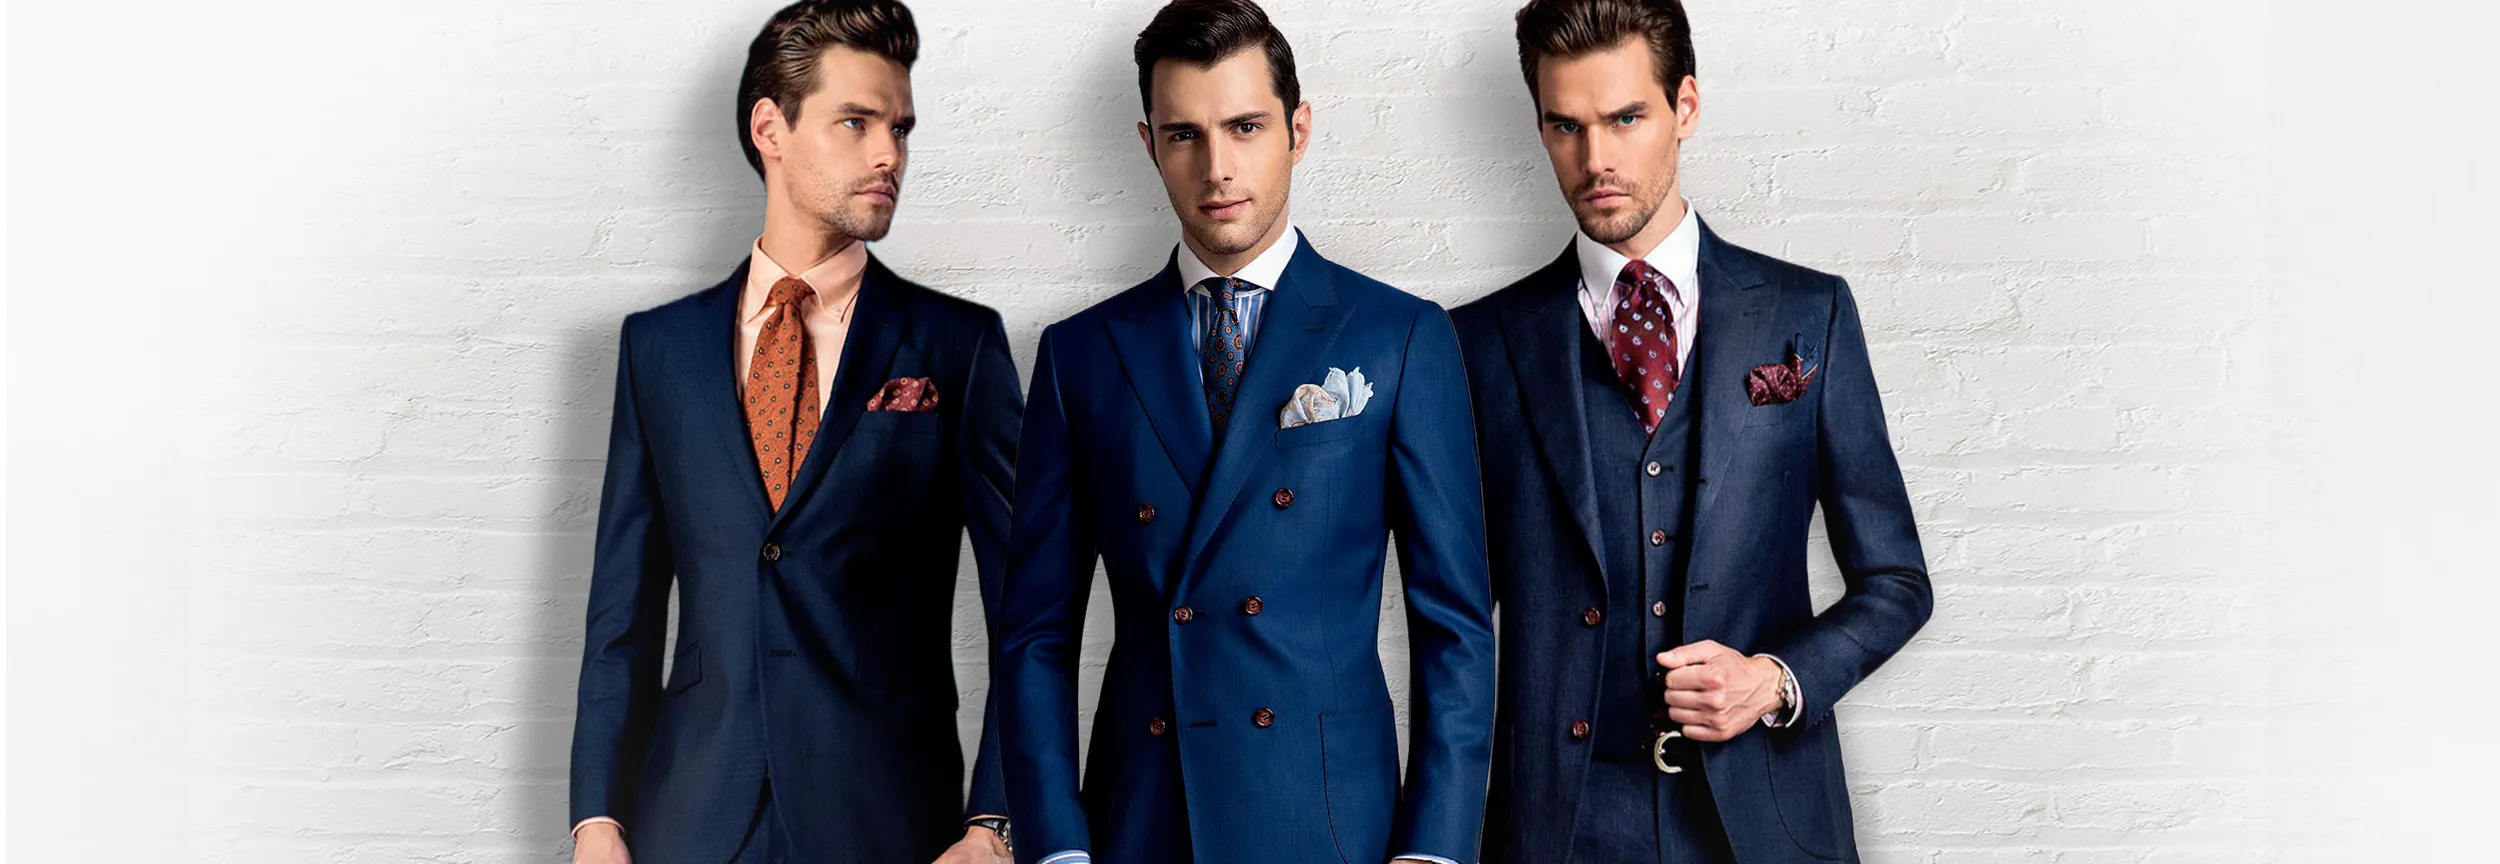 Suits Wholesale Blazer Casual Business Suit Korean Bespoke Wedding Suits  Men Suit - China Work Suit and Business Suit price | Made-in-China.com